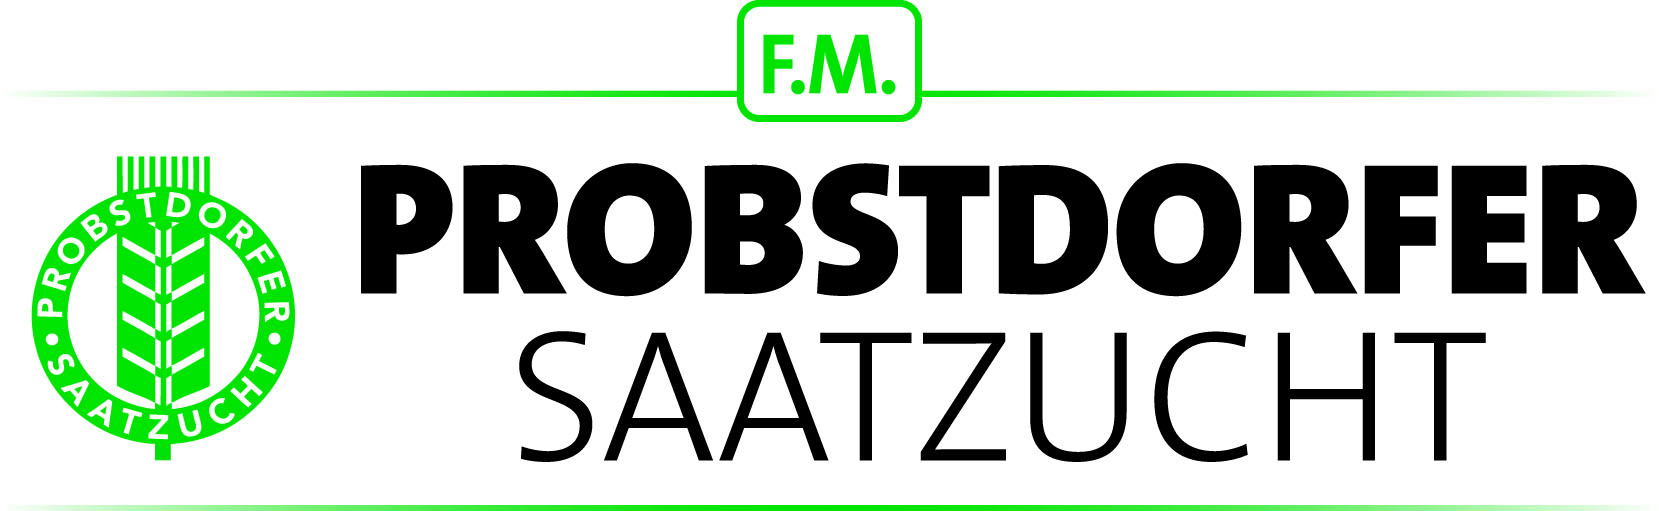 Probstdorfer Saatzucht